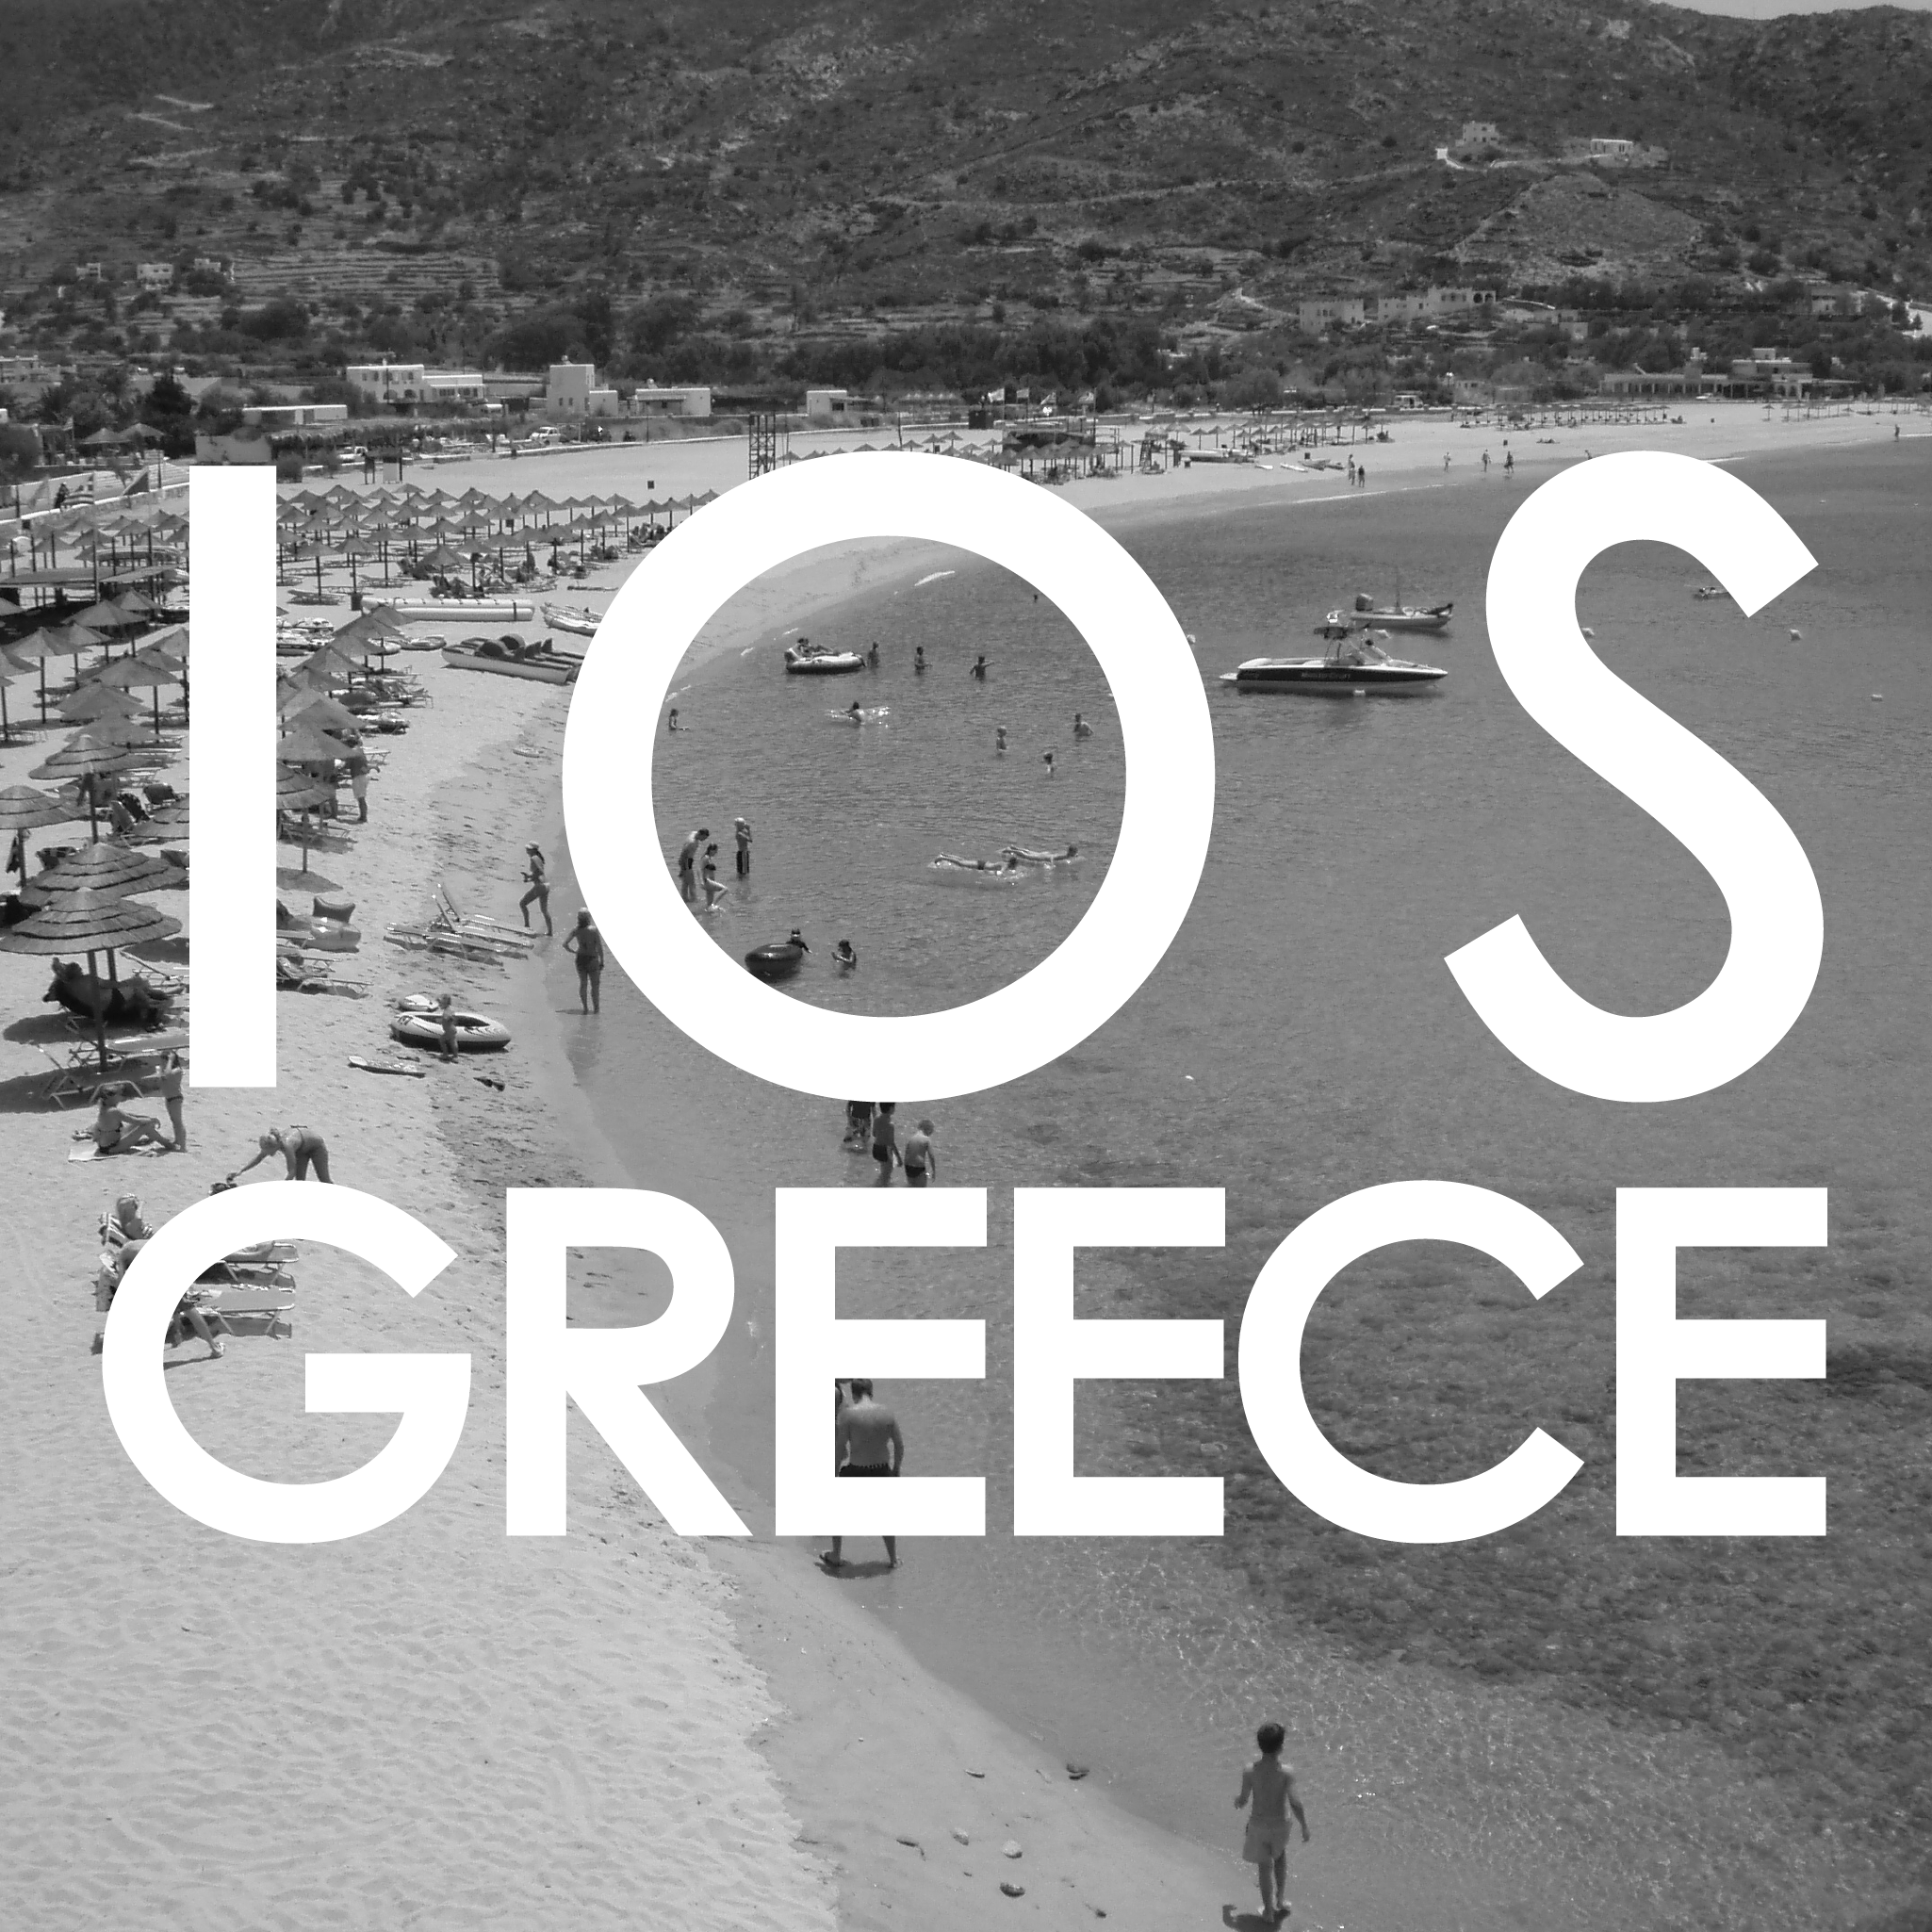 Ios, Greece